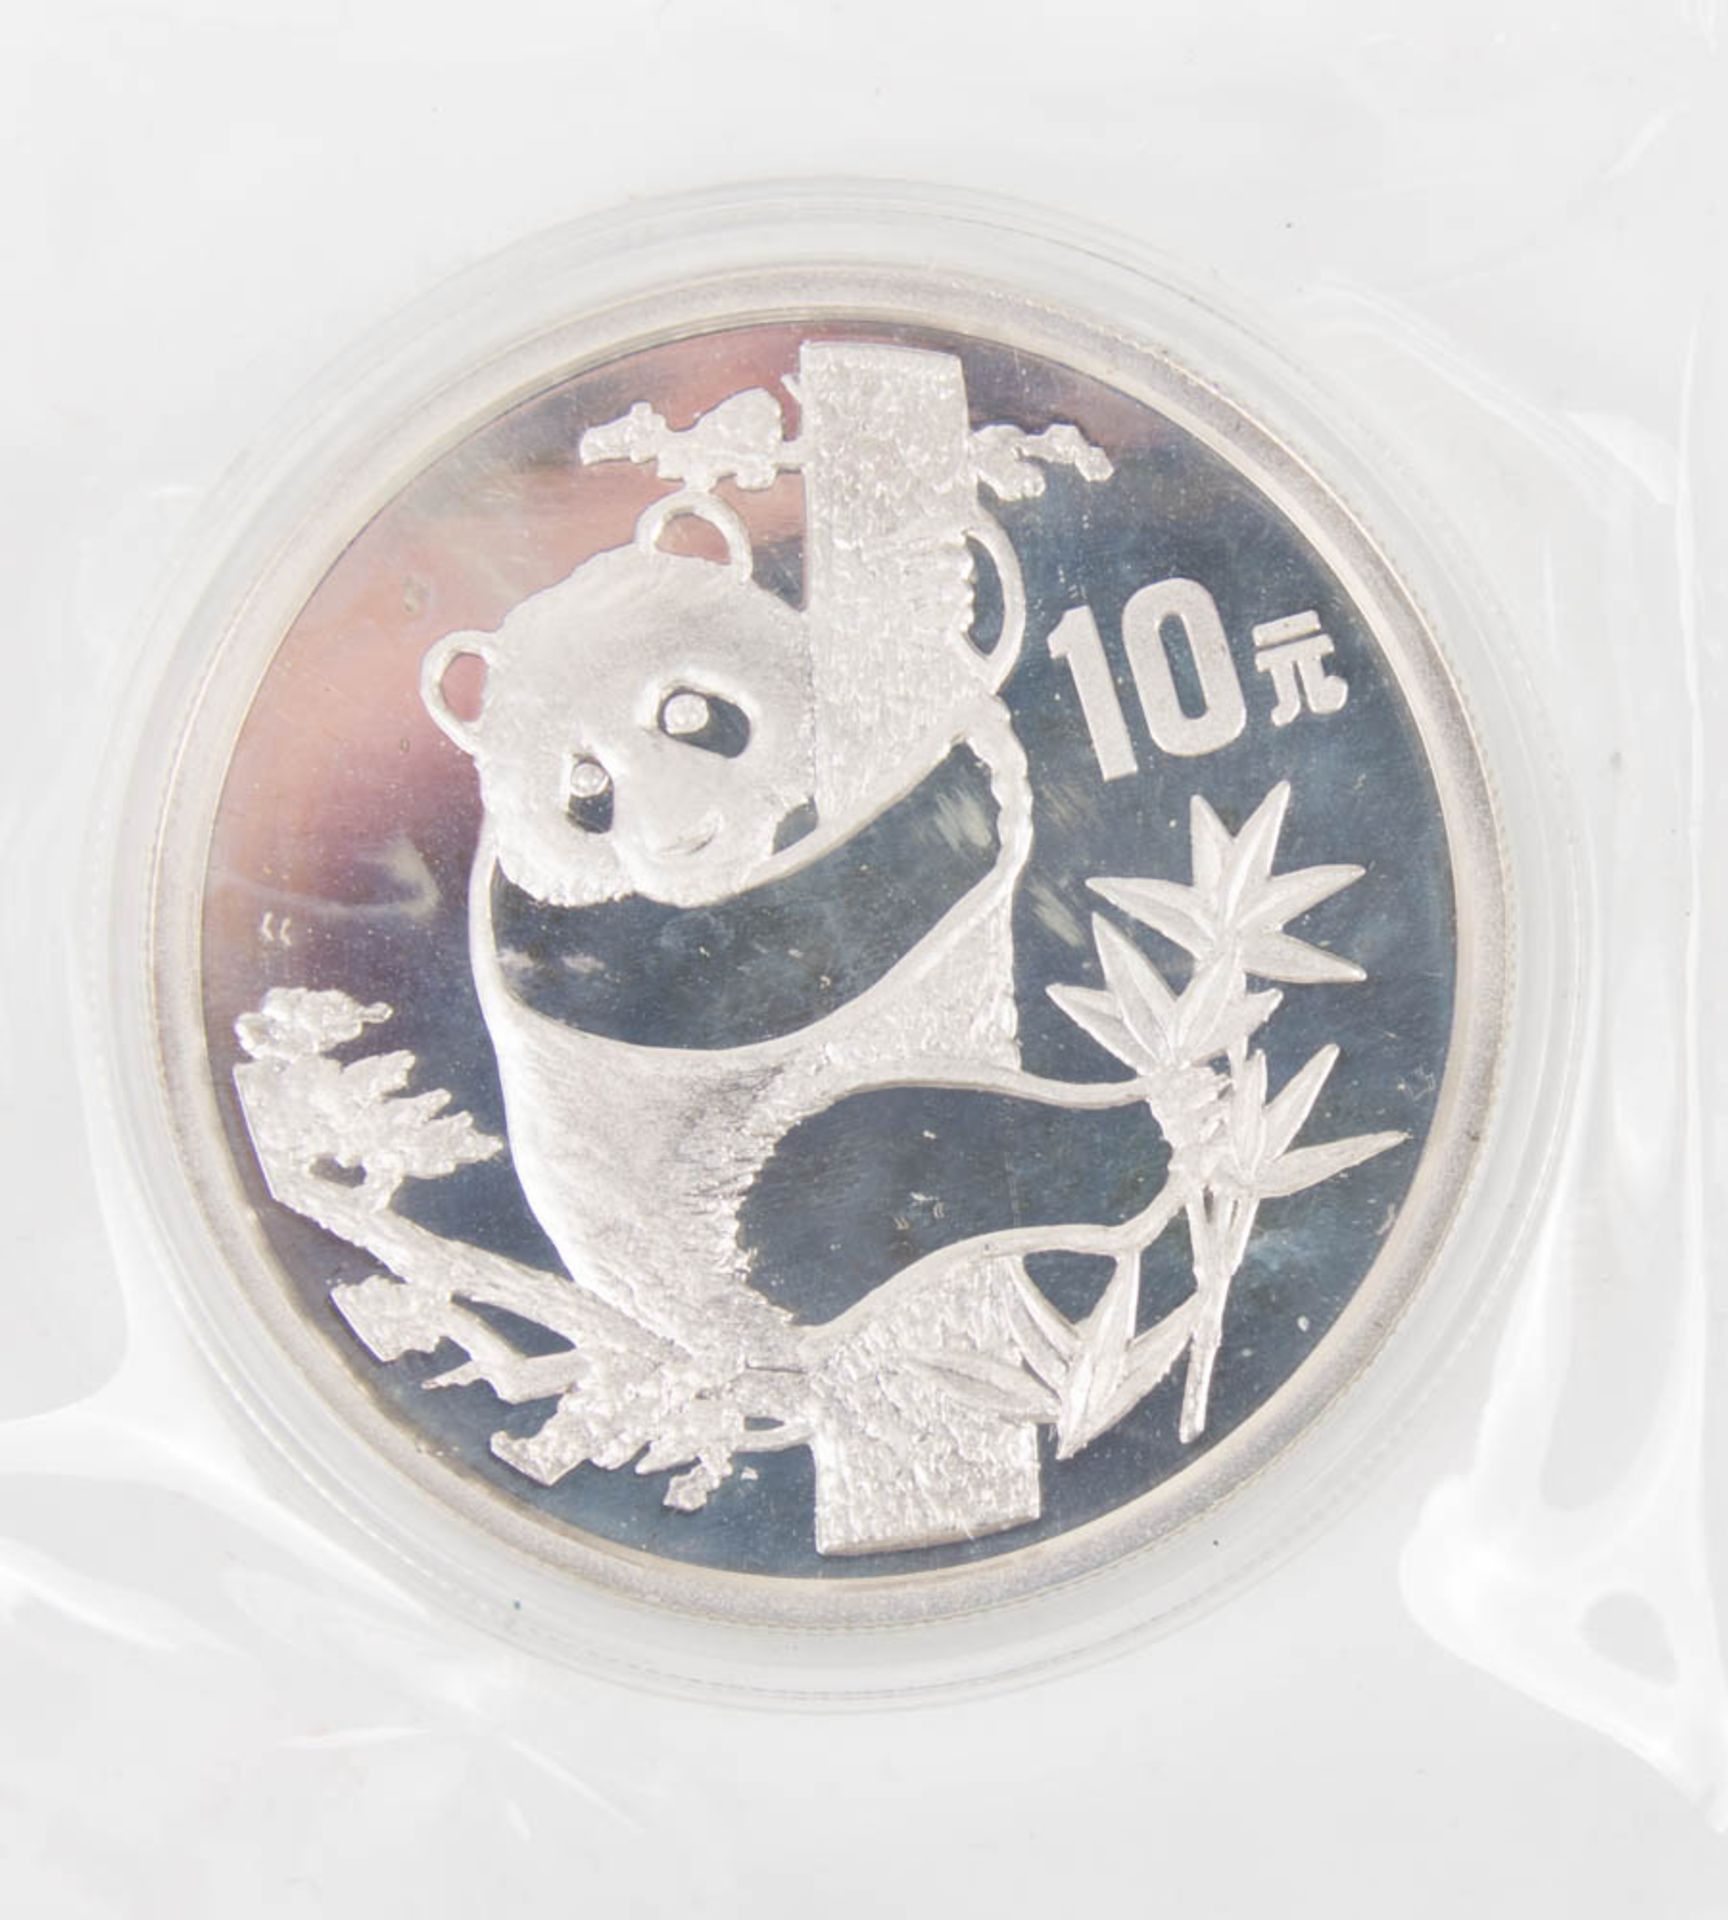 China: 10 Yuan Panda 1987 PP.